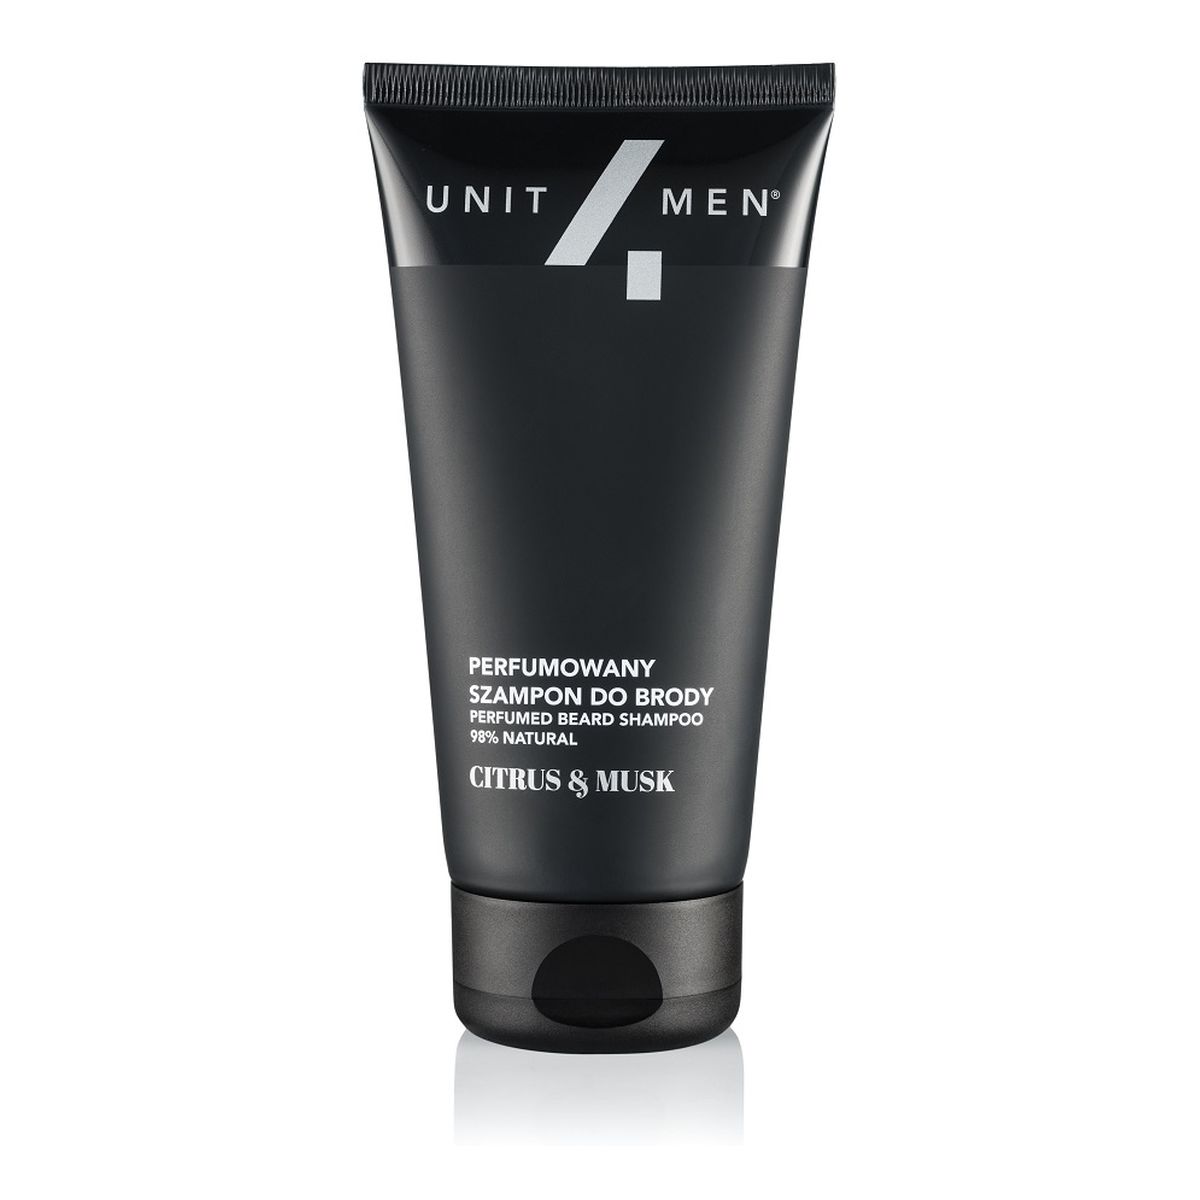 Unit4Men Perfumed beard shampoo perfumowany szampon do brody citrus&musk 100ml